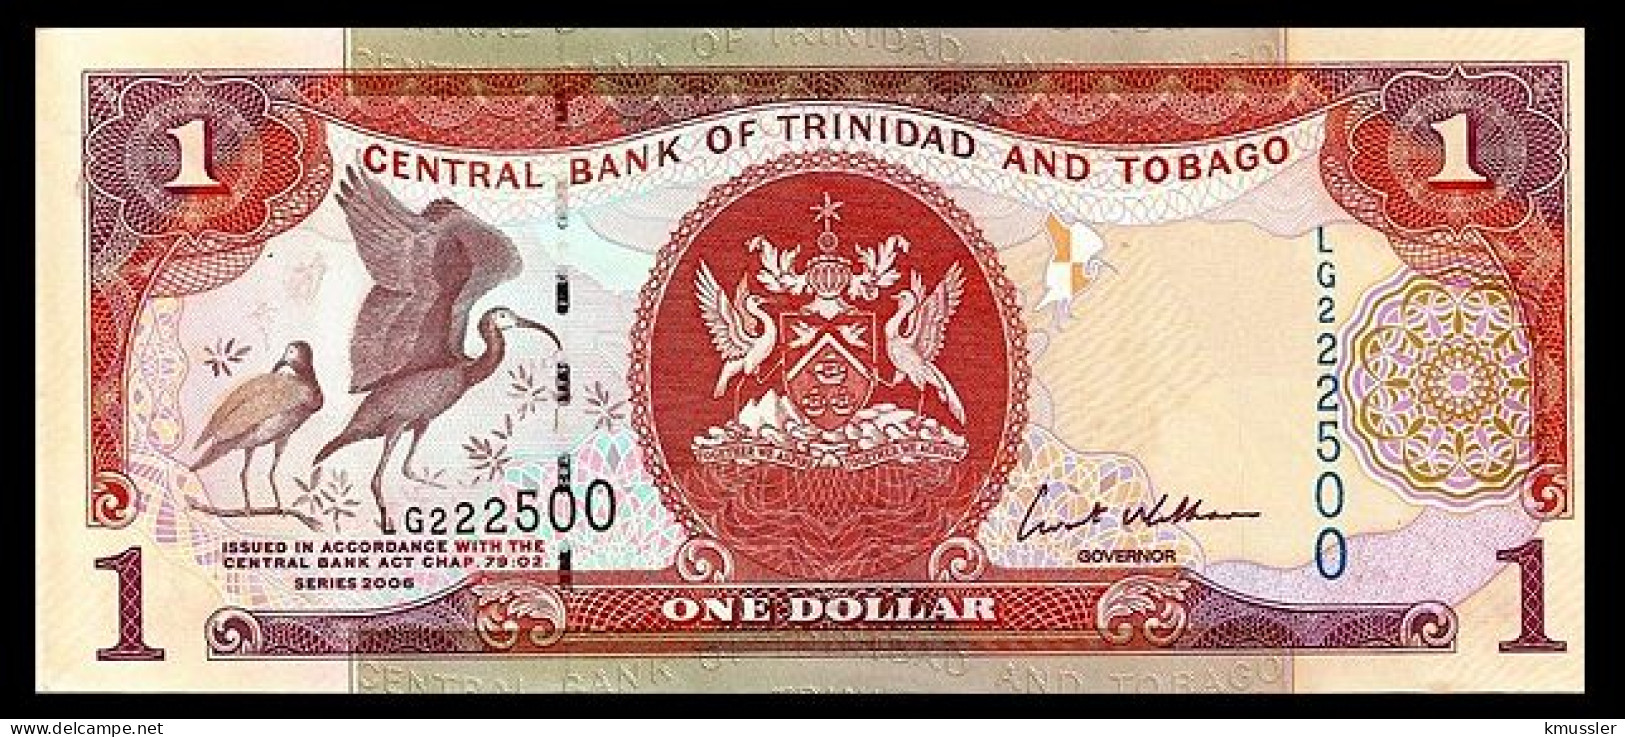 # # # Banknote Trinidad Und Tobago 1 Dollar 2002 UNC # # # - Trinidad & Tobago